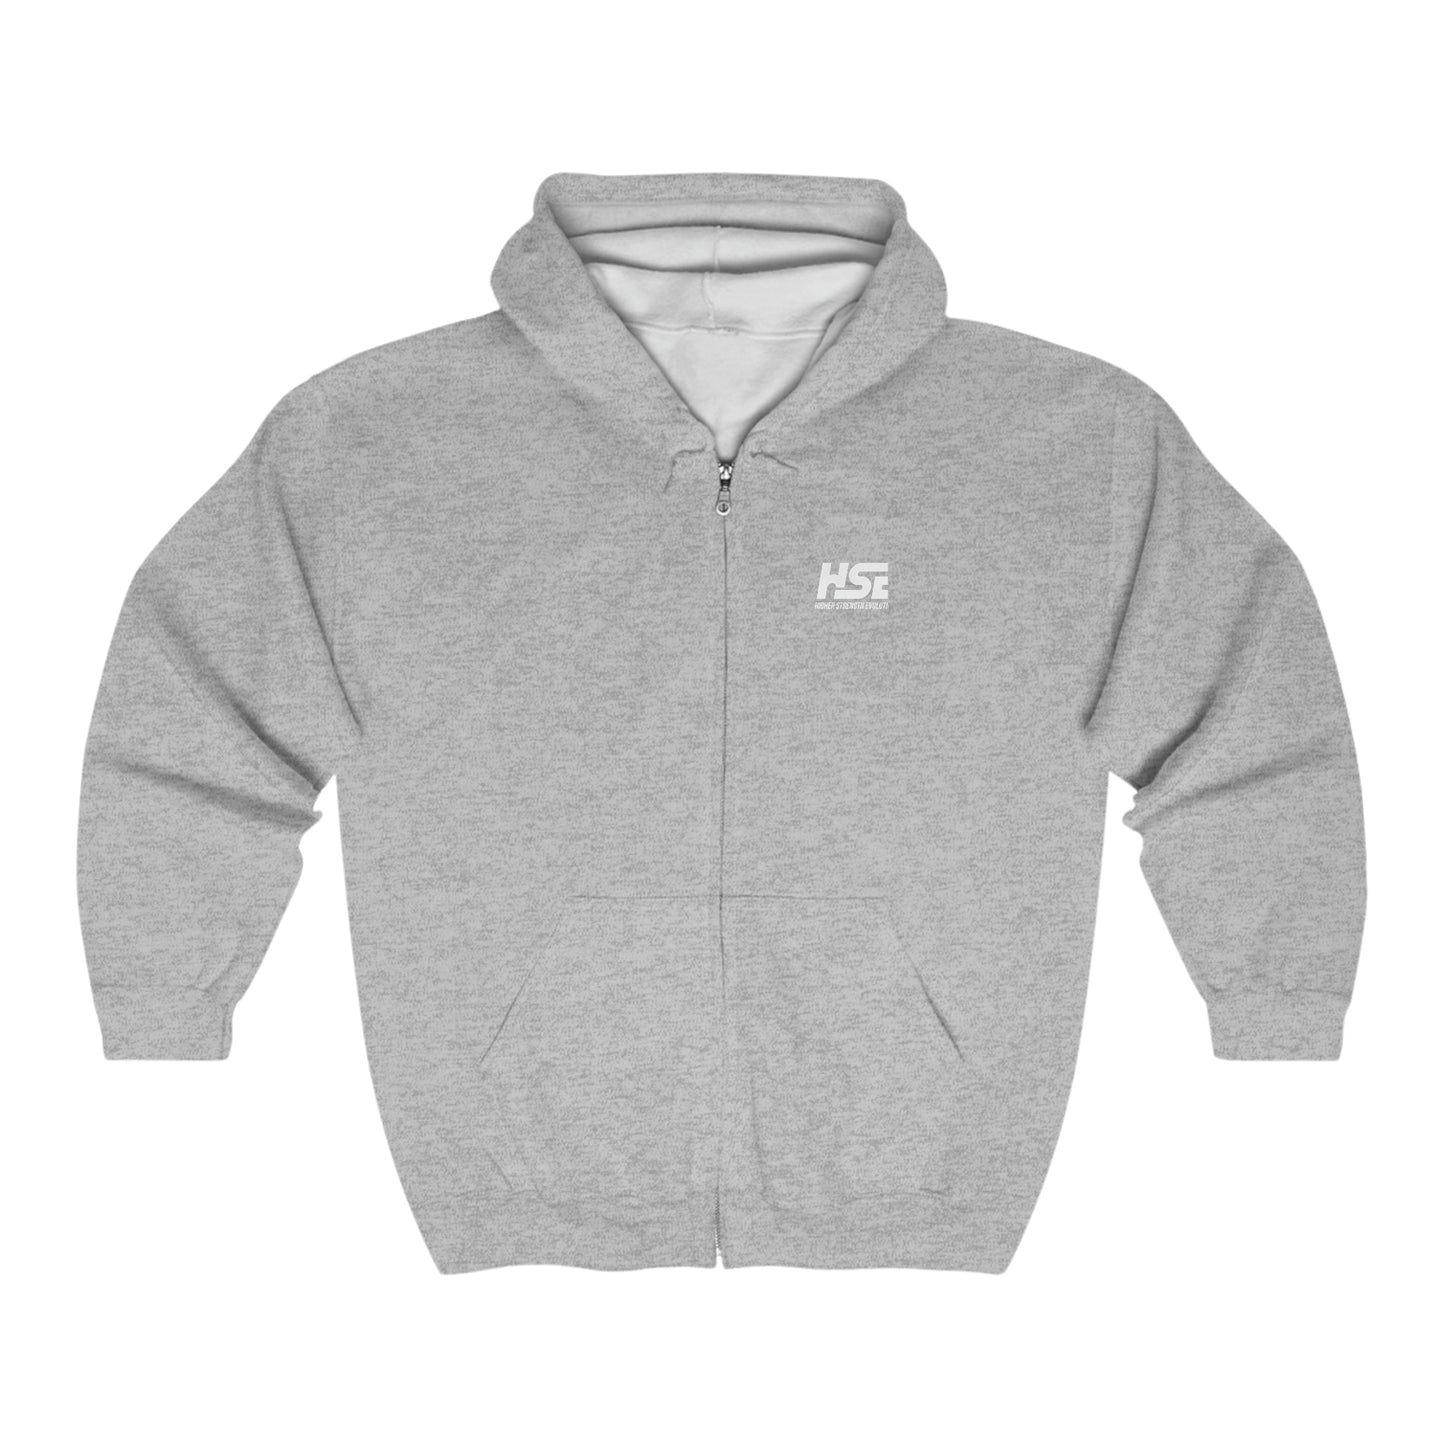 HSE Full Zip Hooded Sweatshirt